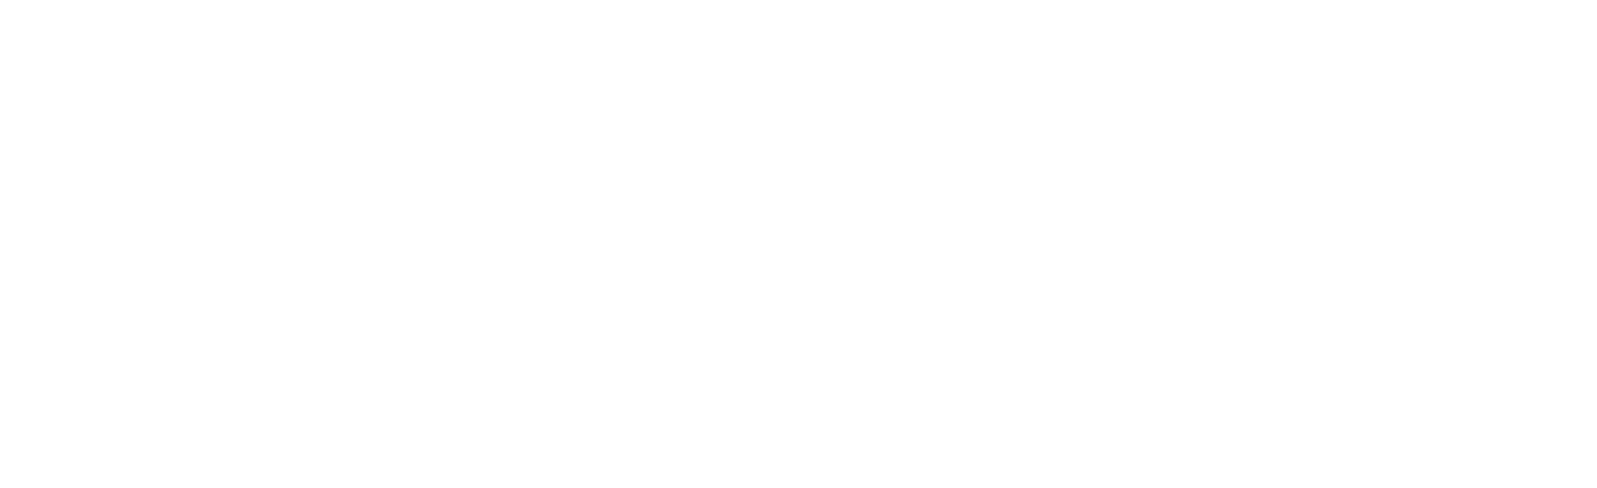 Winc logo large for dark backgrounds (transparent PNG)